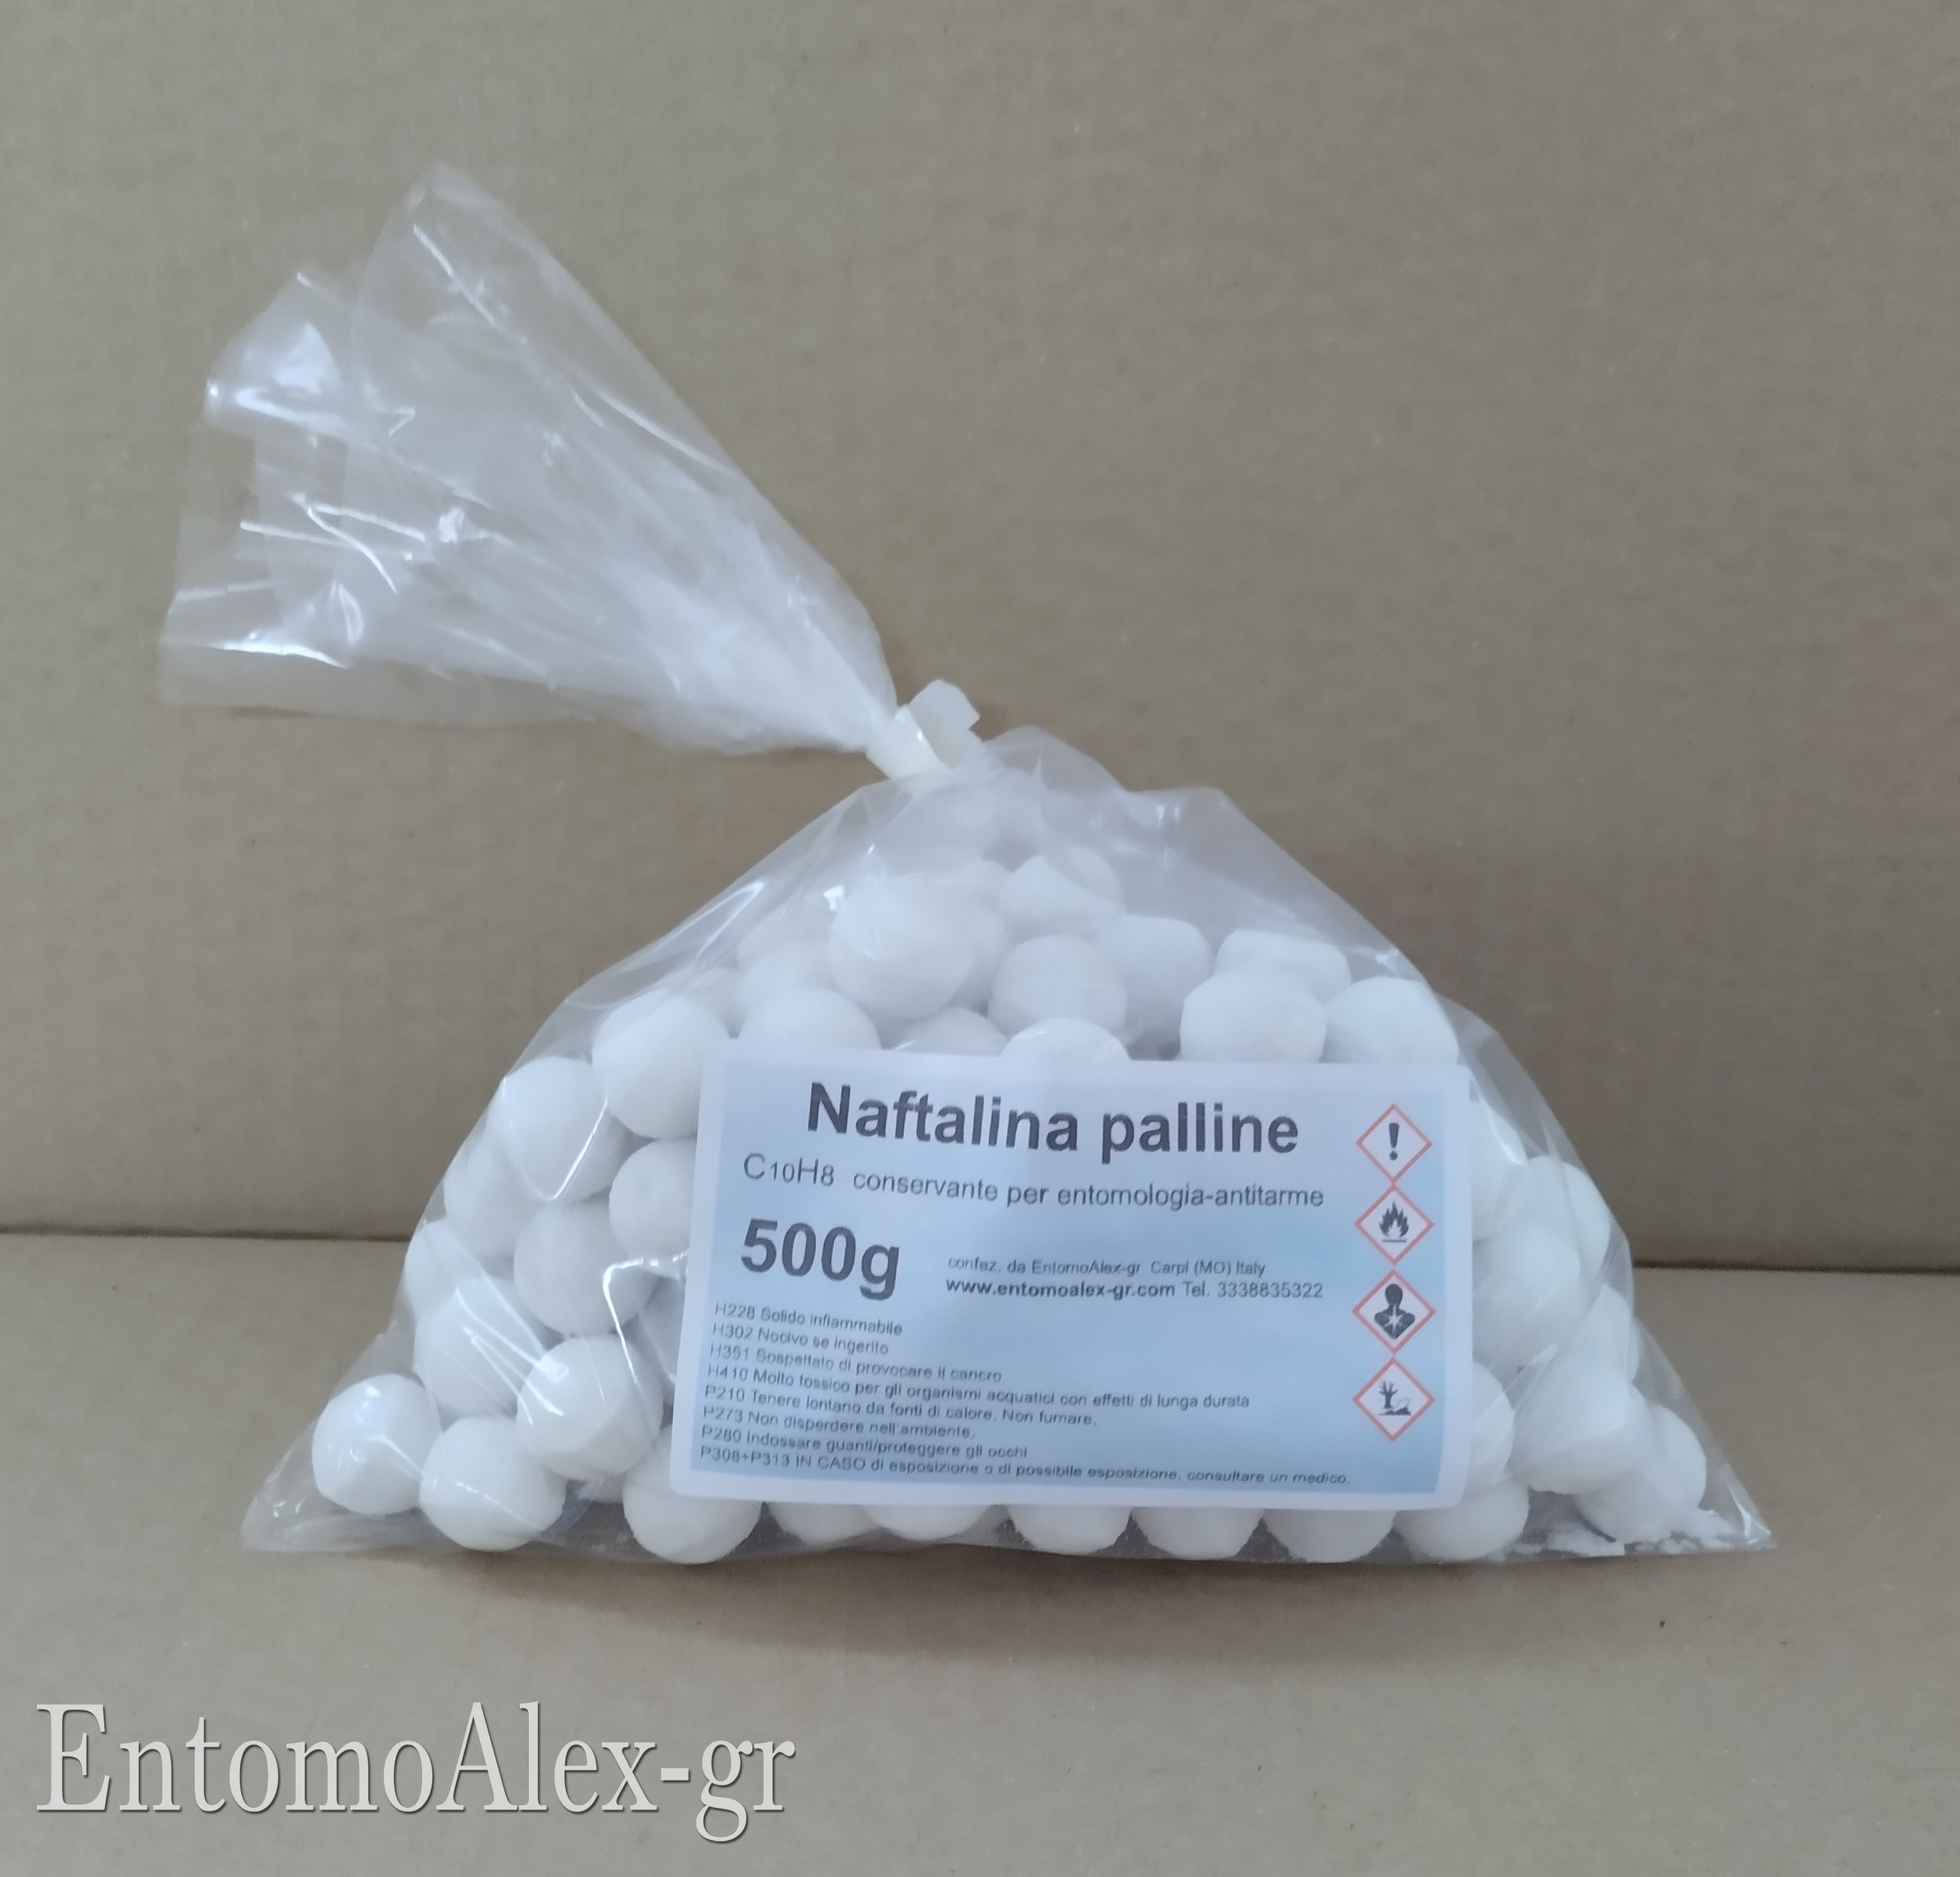 Naftalina in palline antitarme 500 gr